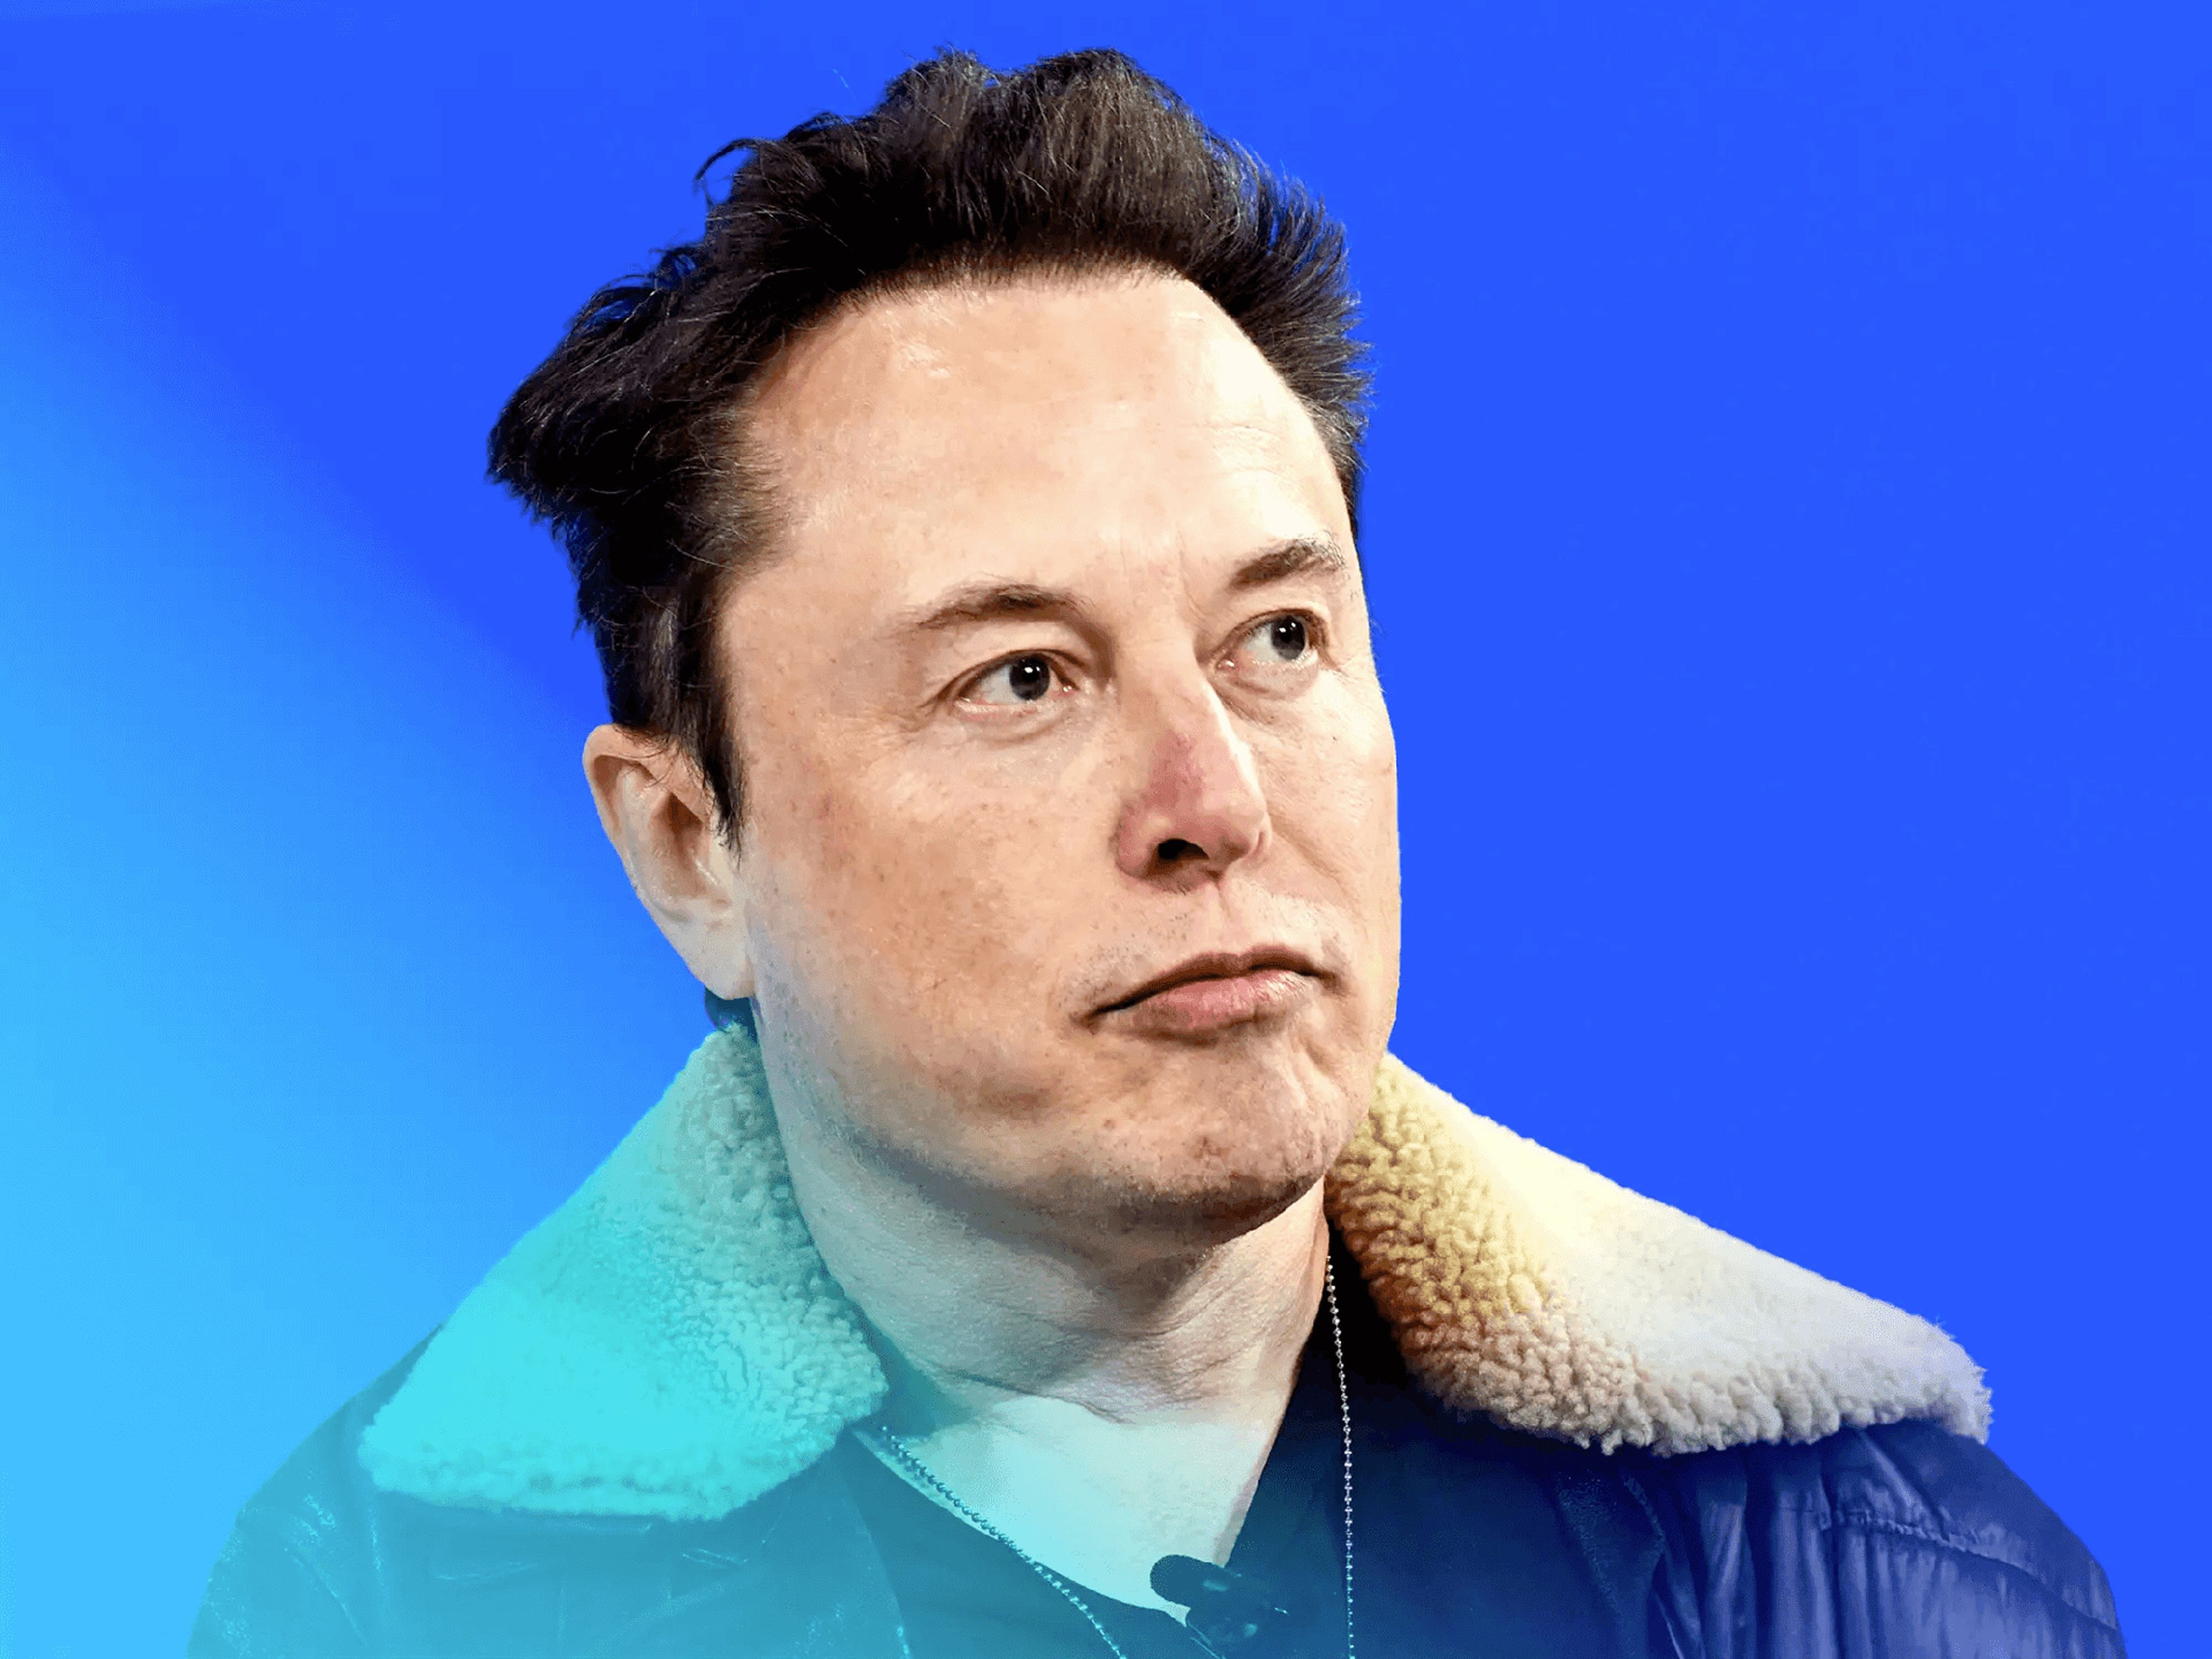 Todo el mundo tiene teorías sobre por qué Elon Musk se lanzó contra los anunciantes X la semana pasada. 